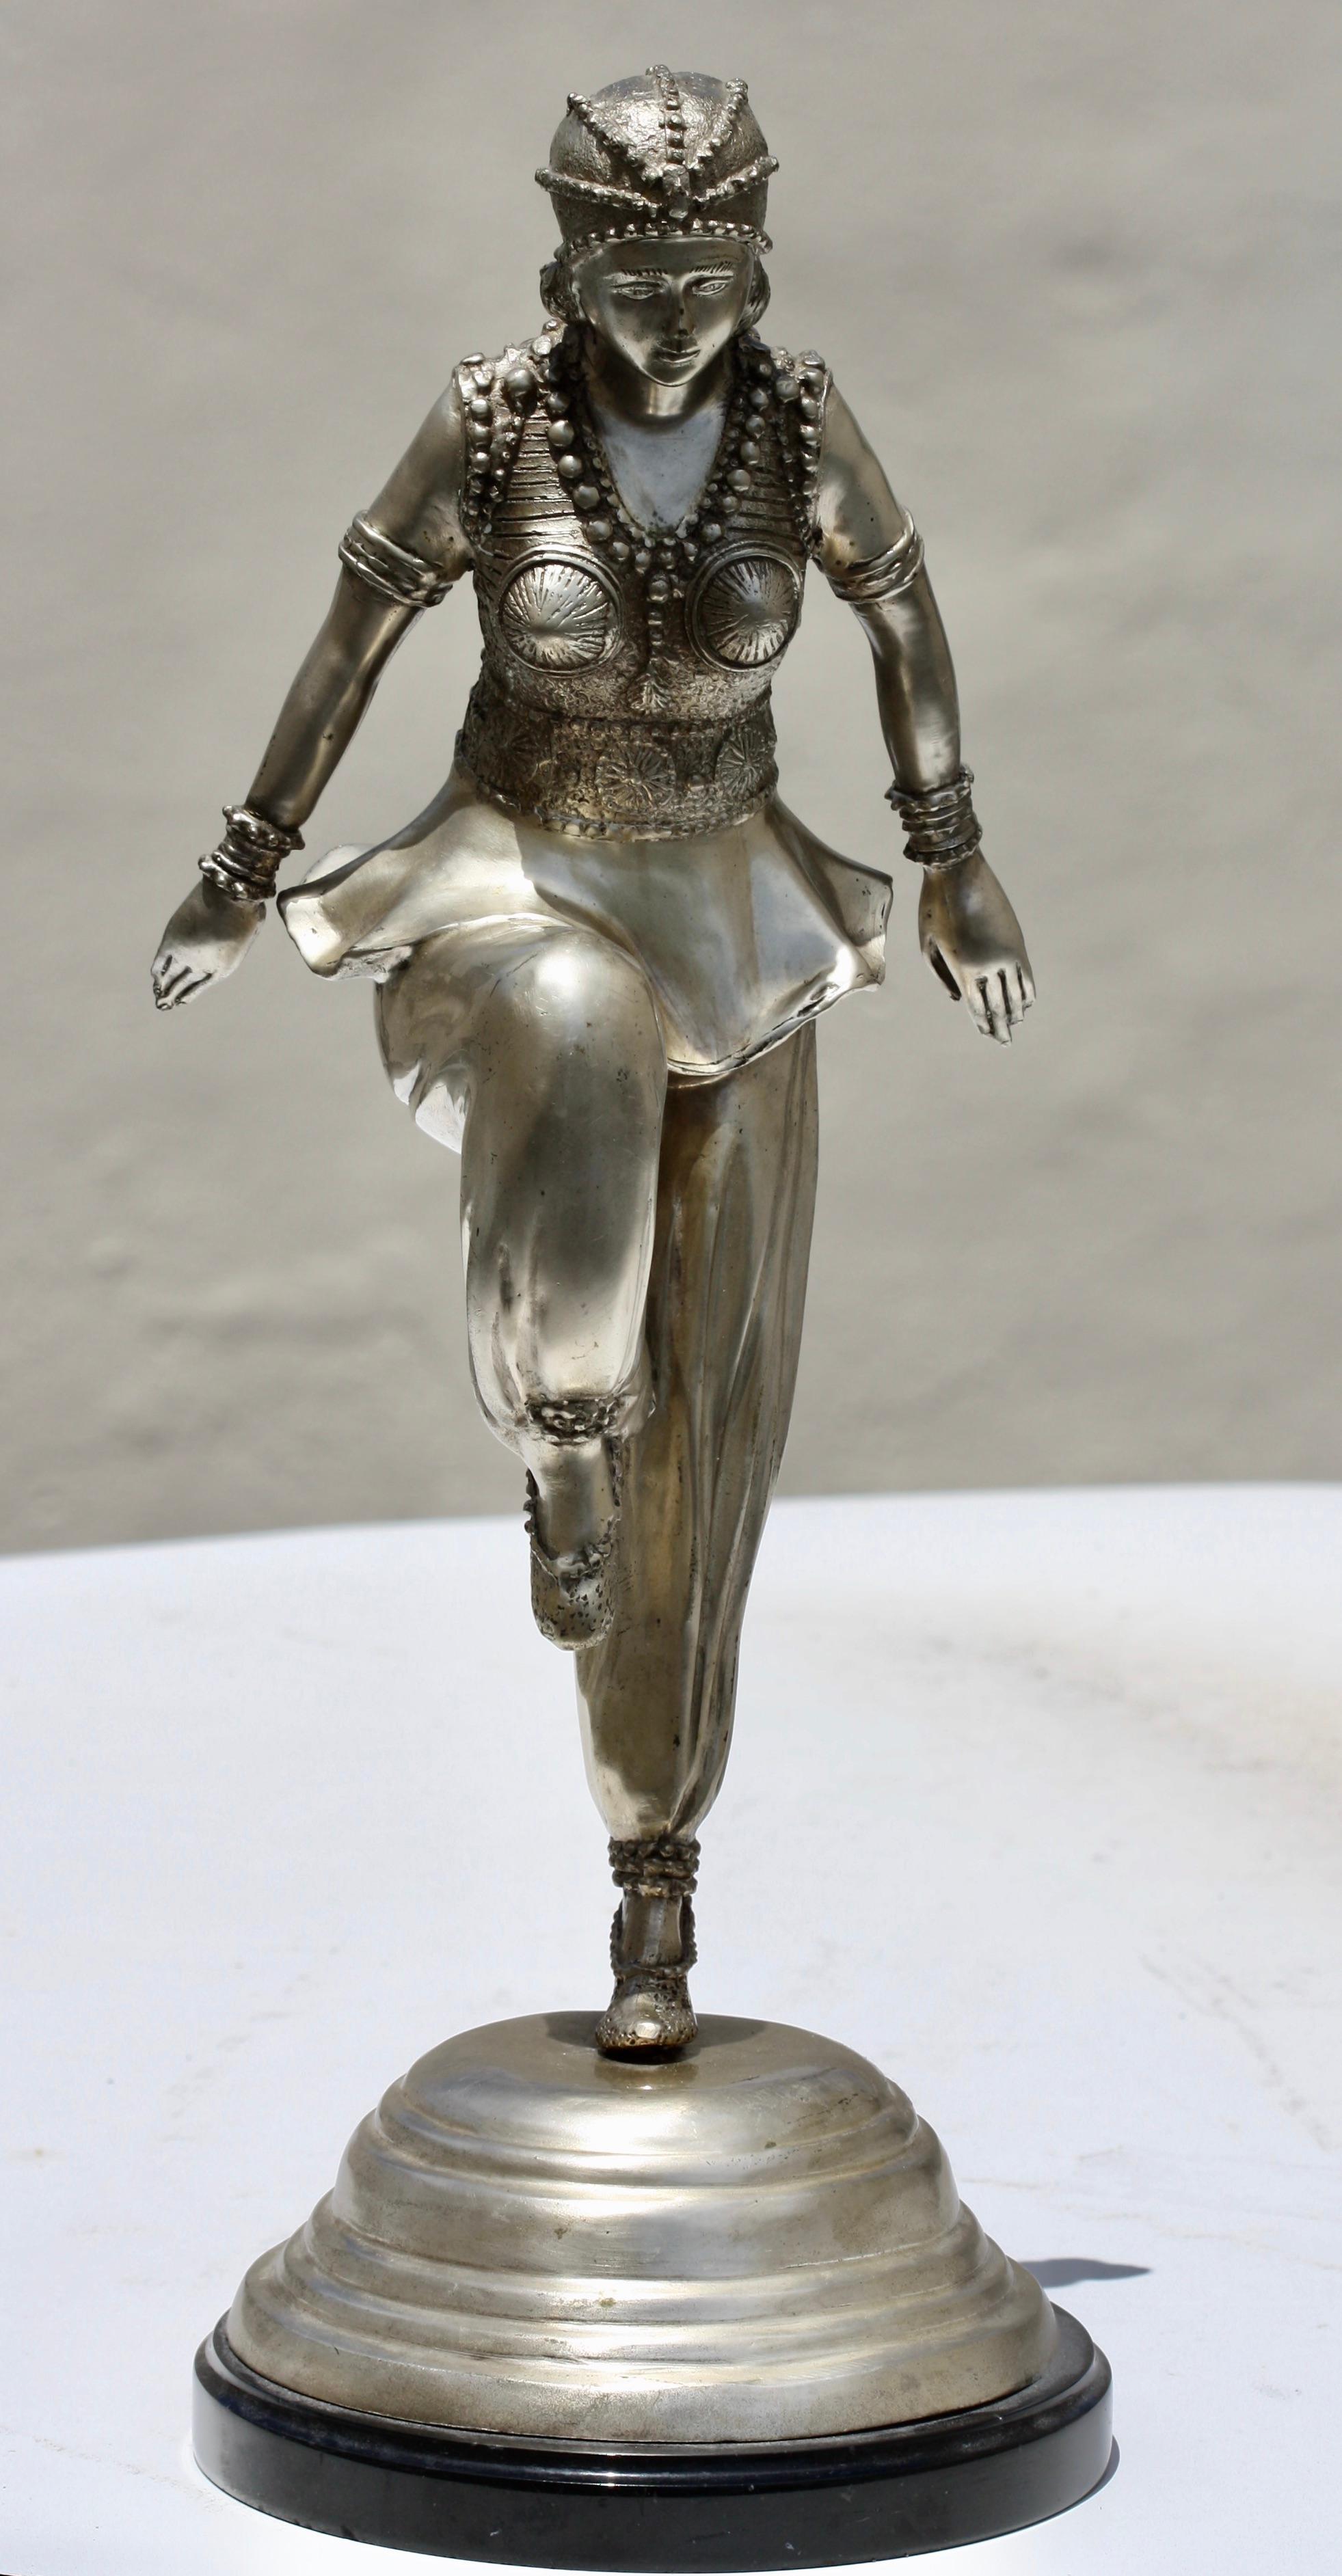 D'après Claire Colinet (1880-1950)
Une danseuse en bronze argenté d'après un modèle de Claire Colinet (1880-1950)
modelée avec ses bras étendus derrière elle, sur un socle en marbre noir
20ème siècle
21 pouces de haut
base ronde de 8 pouces.